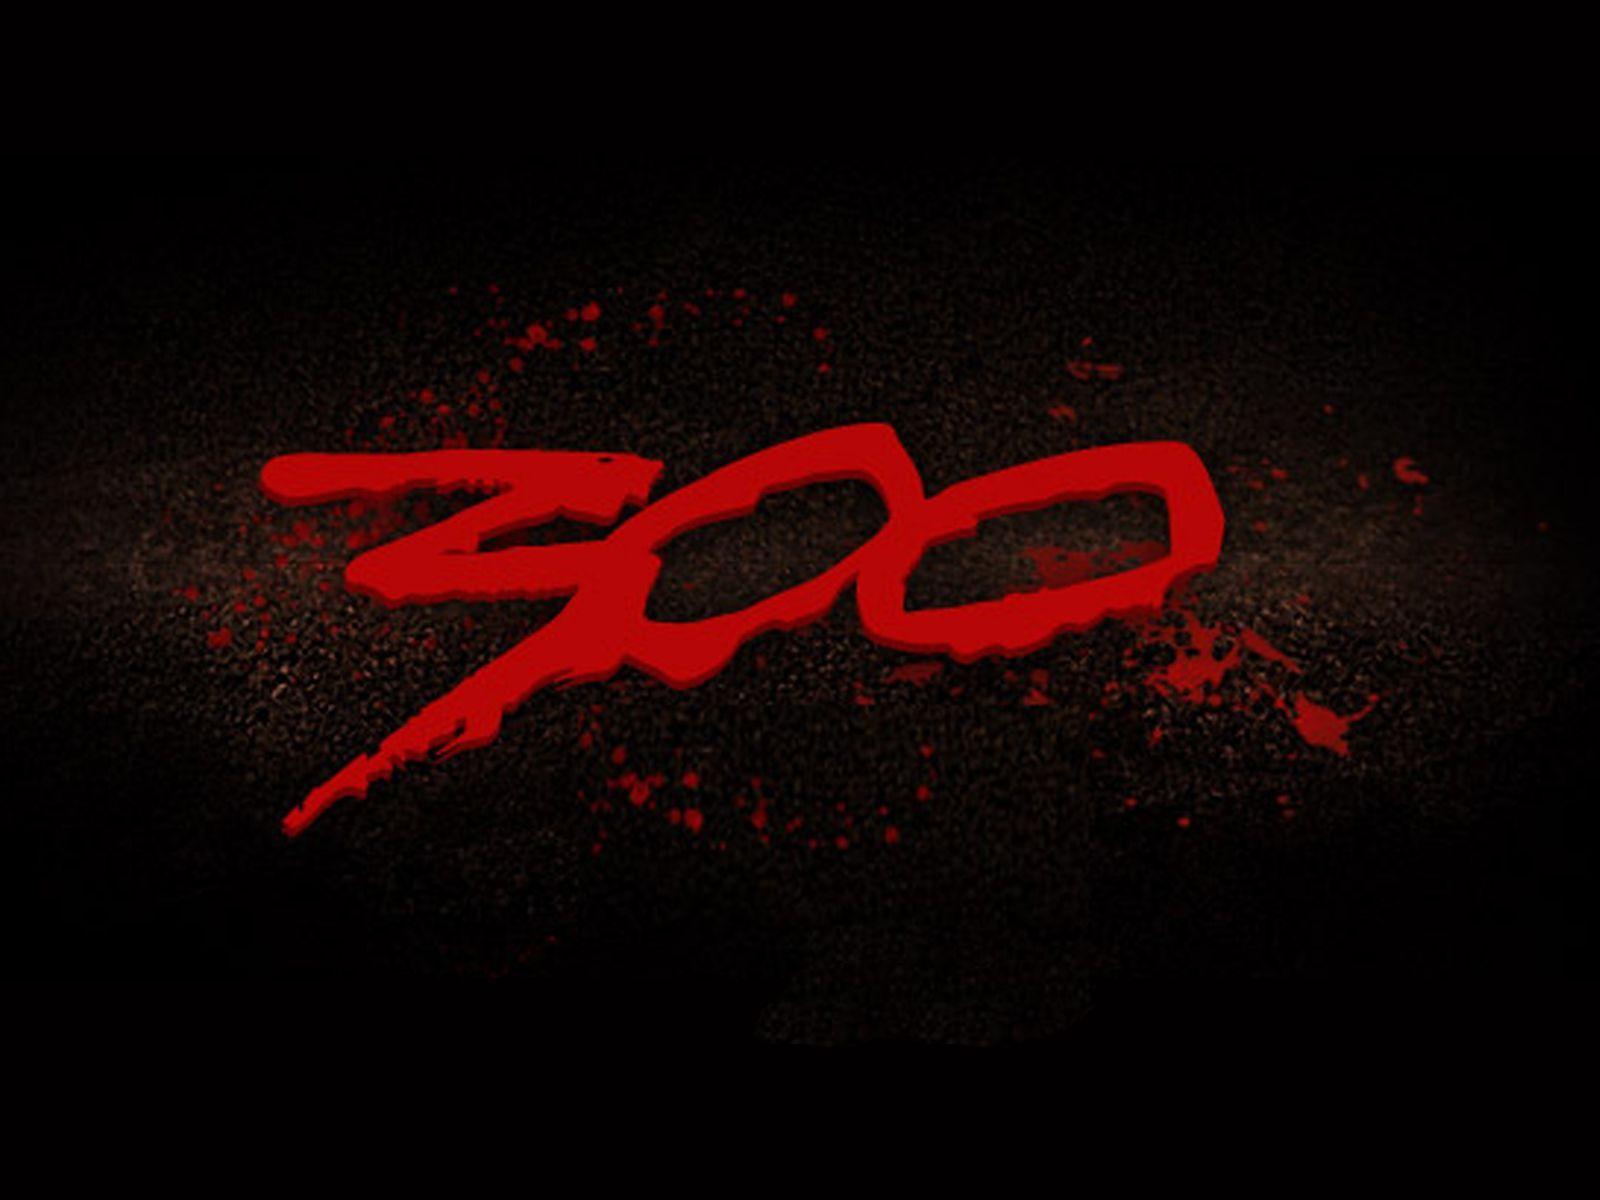 3Oo Logo - 300 Logos